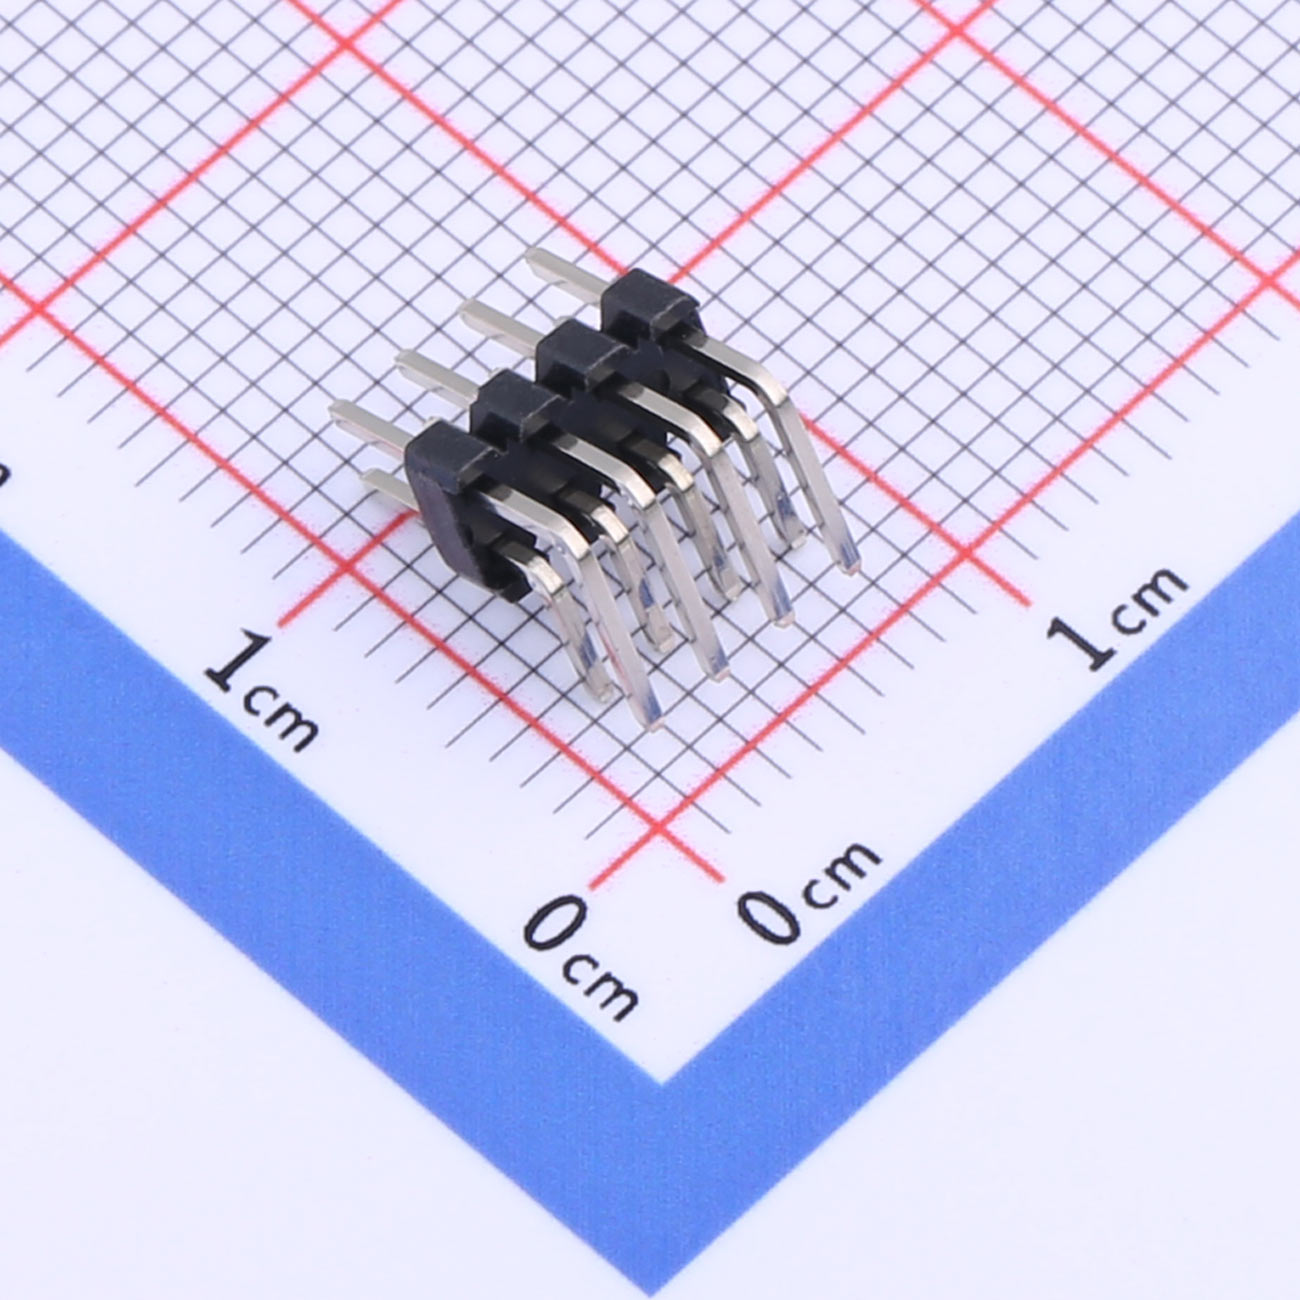 Kinghelm 2mm Pin Header Connector 2 Row*4 Pin 1.5A -  KH-2PH90-2X4P-L10.5